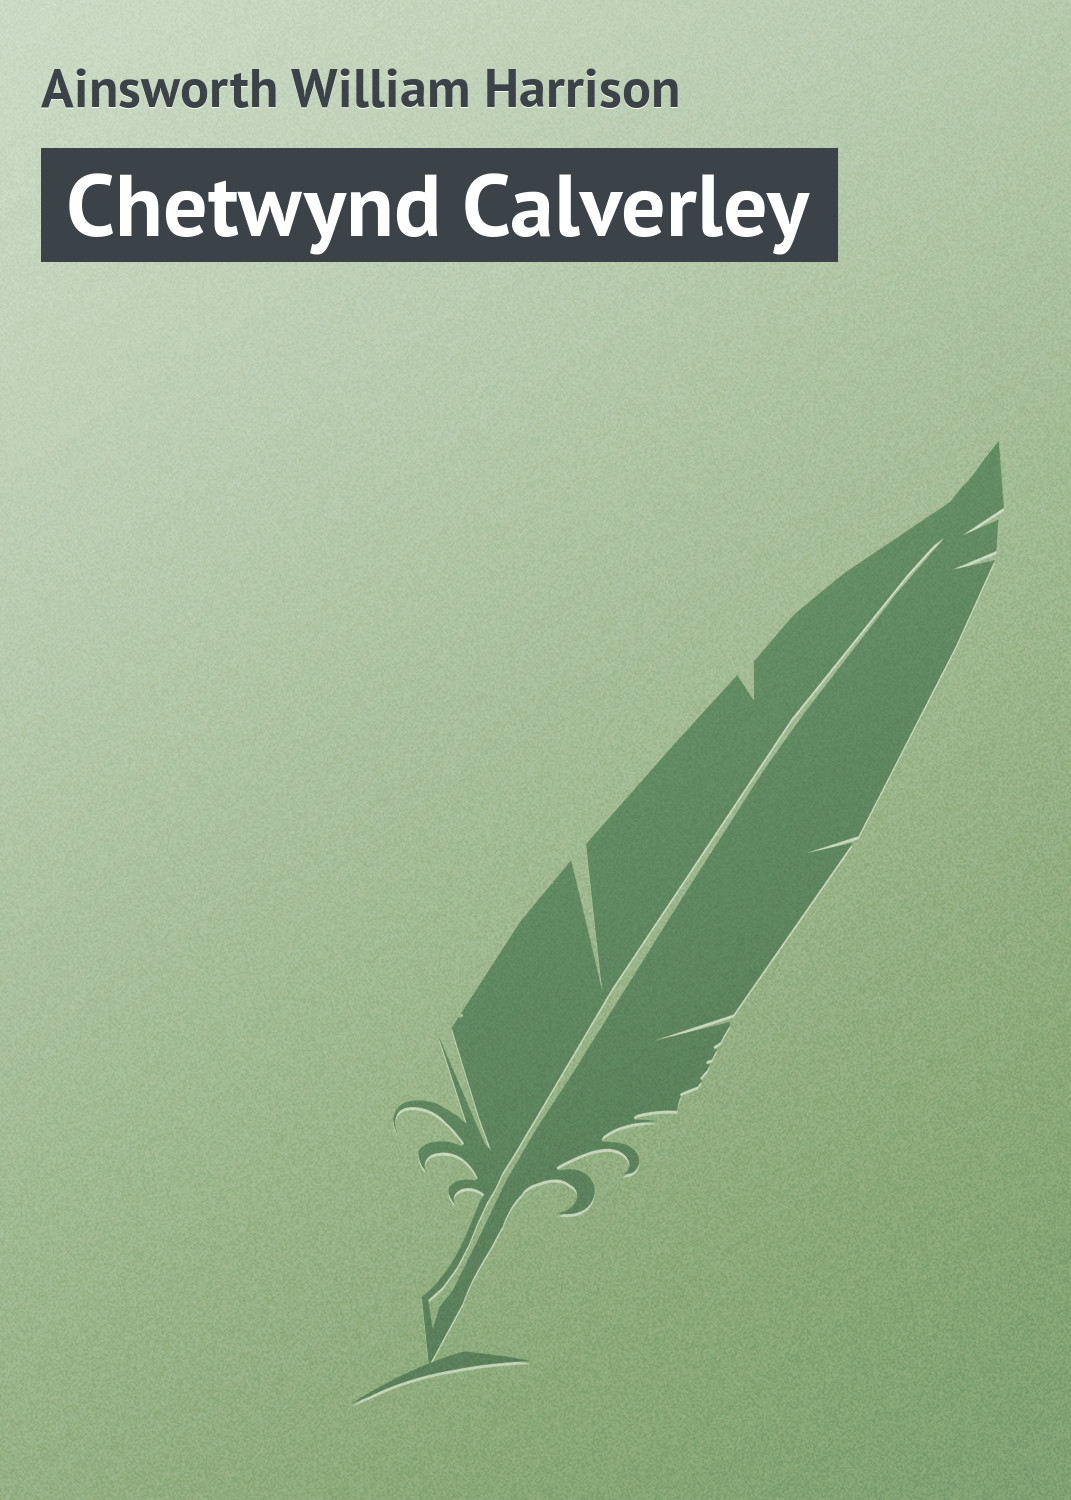 Книга Chetwynd Calverley из серии , созданная William Ainsworth, может относится к жанру Иностранные языки, Зарубежная классика. Стоимость электронной книги Chetwynd Calverley с идентификатором 23159531 составляет 5.99 руб.